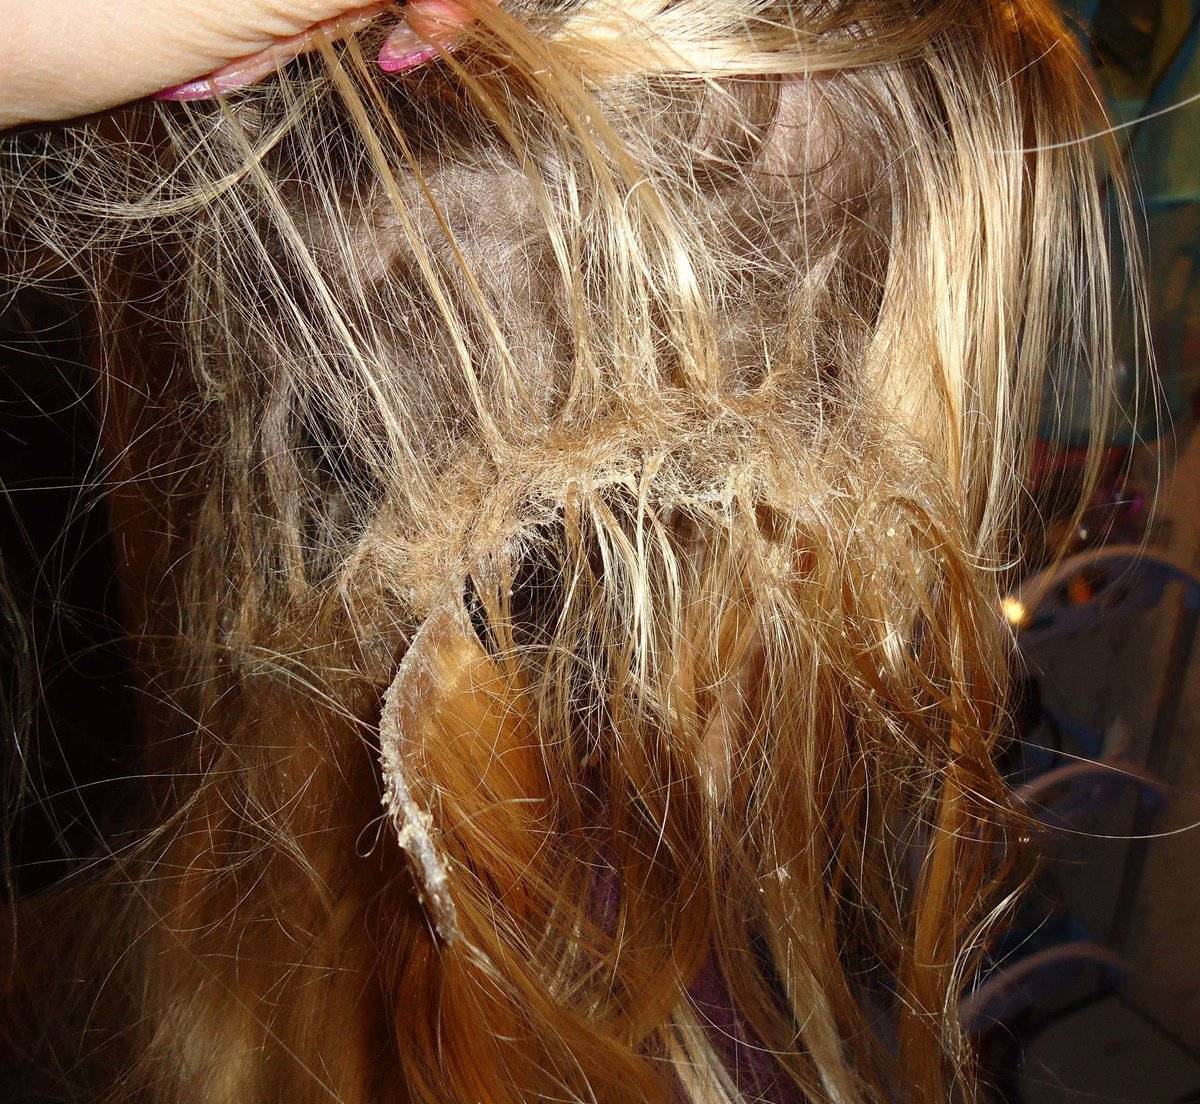 Наращивание волос после травмы